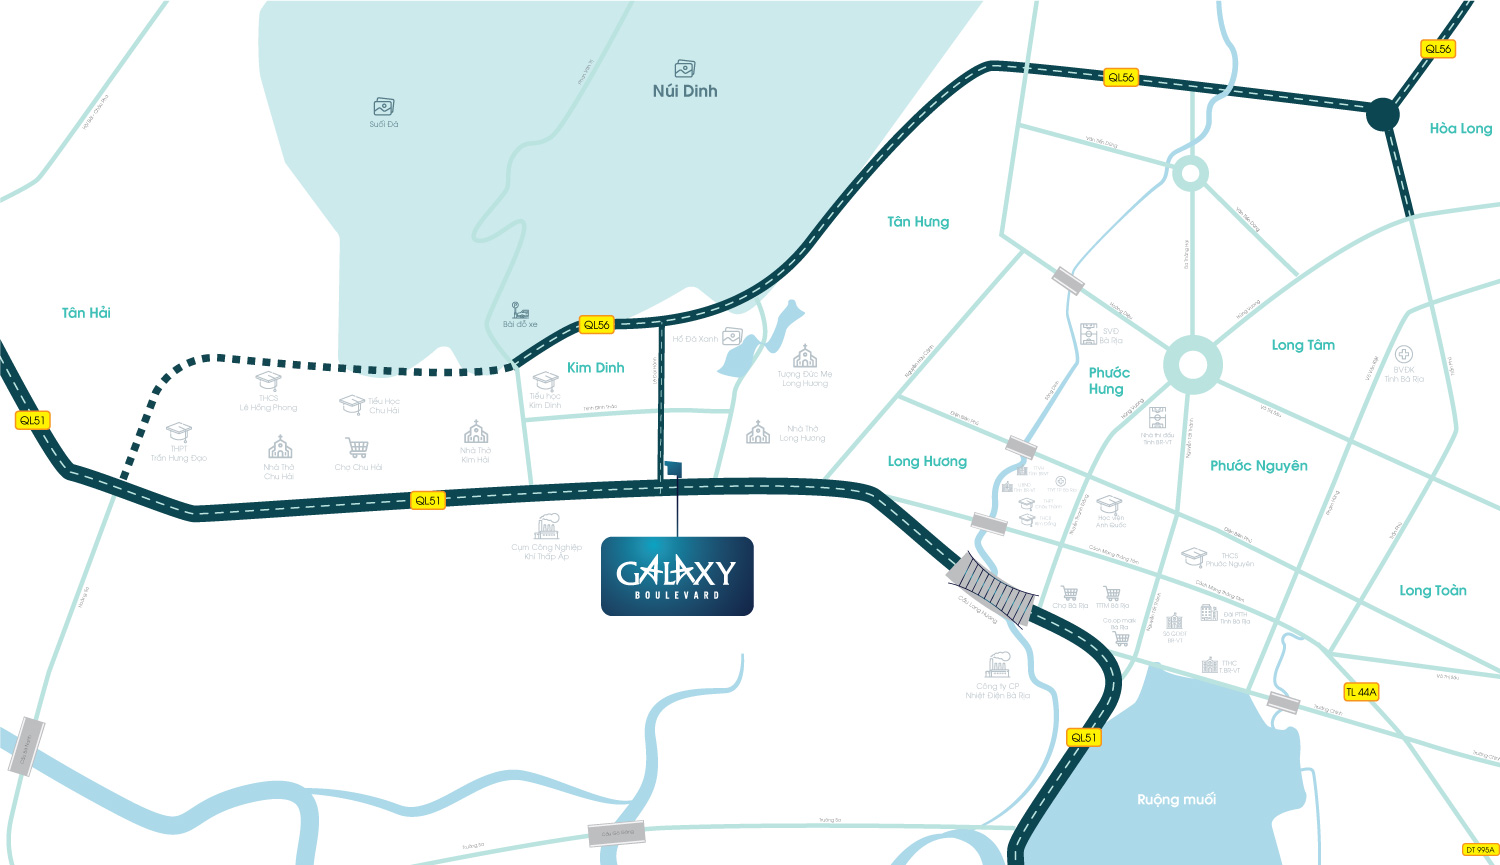 Dự án Galaxy Boulevard có vị trí chiến lược, cửa ngõ giao thương giữa 3 vùng kinh tế trọng điểm của Miền Nam là Bà Rịa Vũng Tàu – Đồng Nai – HCM. Vị trí dự án cũng là nơi giao thoa của 2 thị trường bất động sản nóng nhất hiện nay là Bà Rịa – Vũng Tàu và Đồng Nai (khu vực xung quanh sân bay Quốc tế Long Thành).